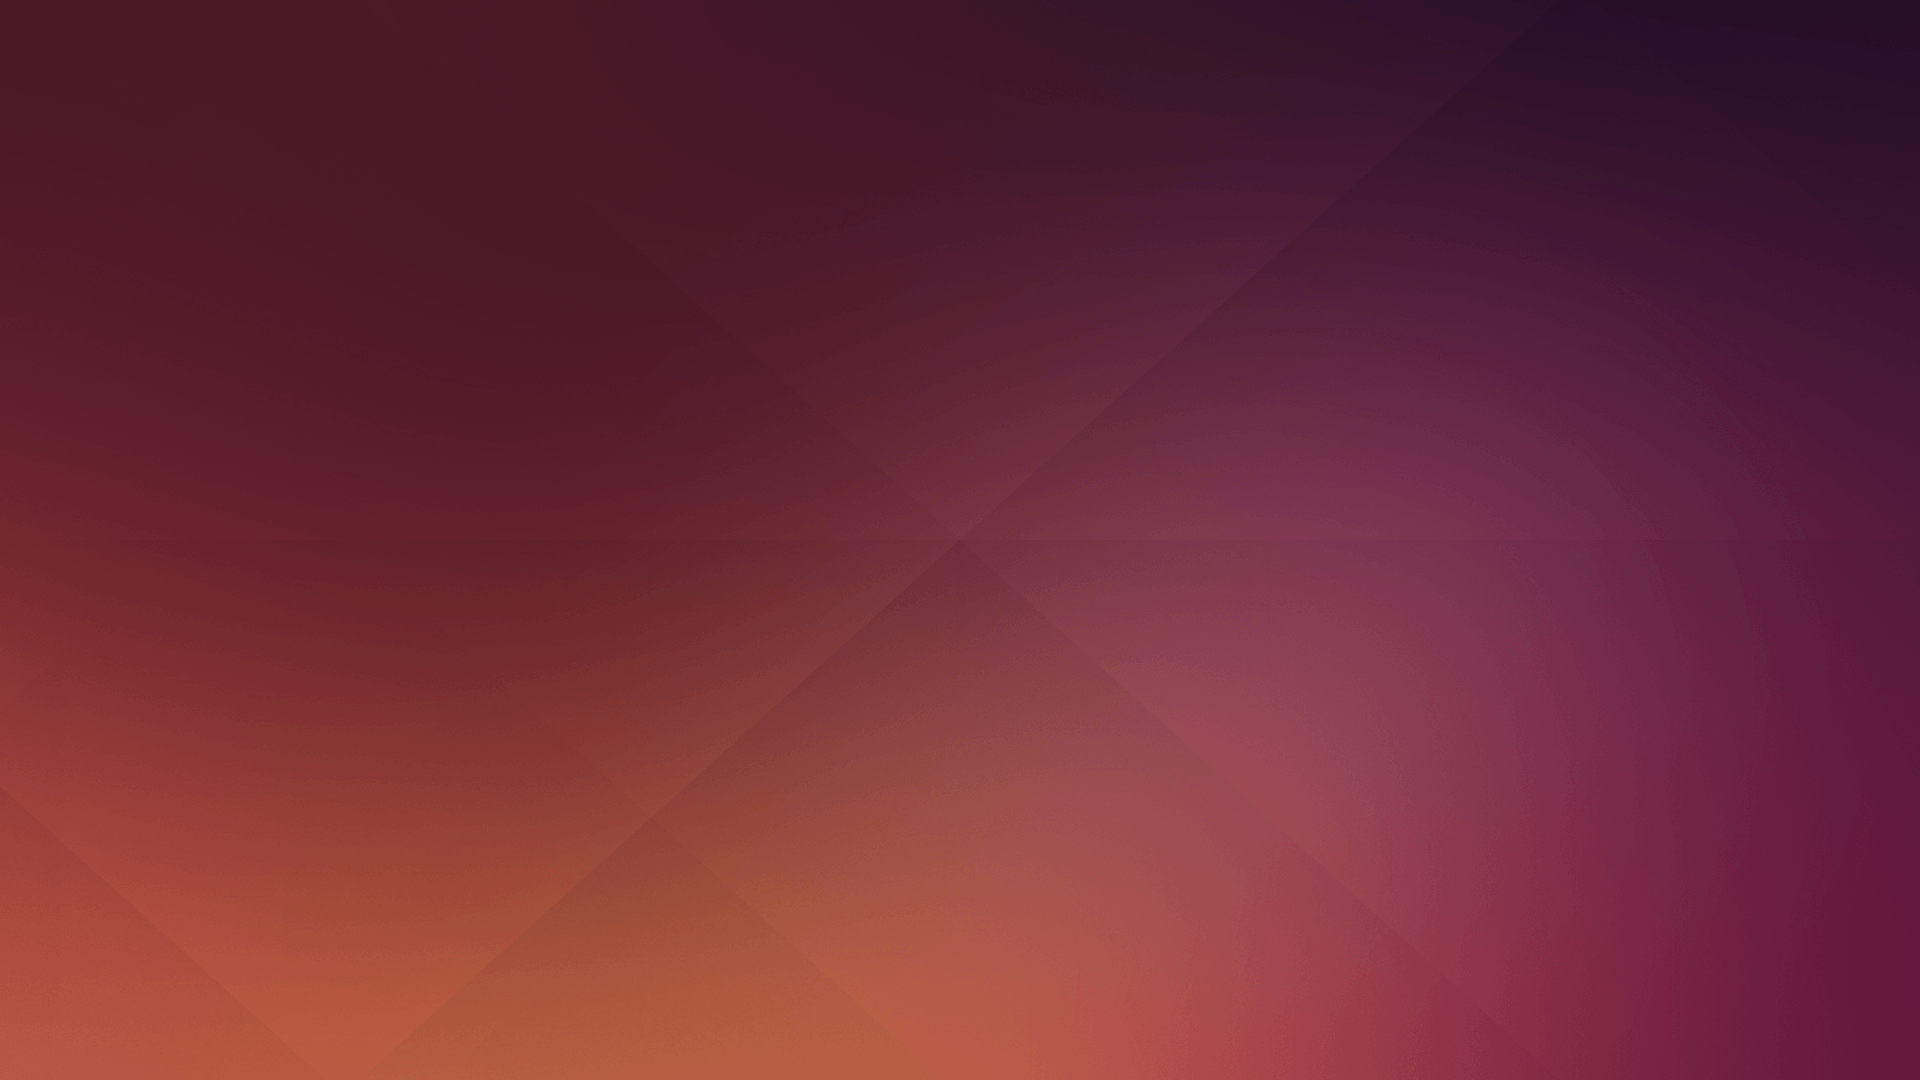 Ubuntu Default Wallpaper, 4.04 14. 1920x1080 By O L A V